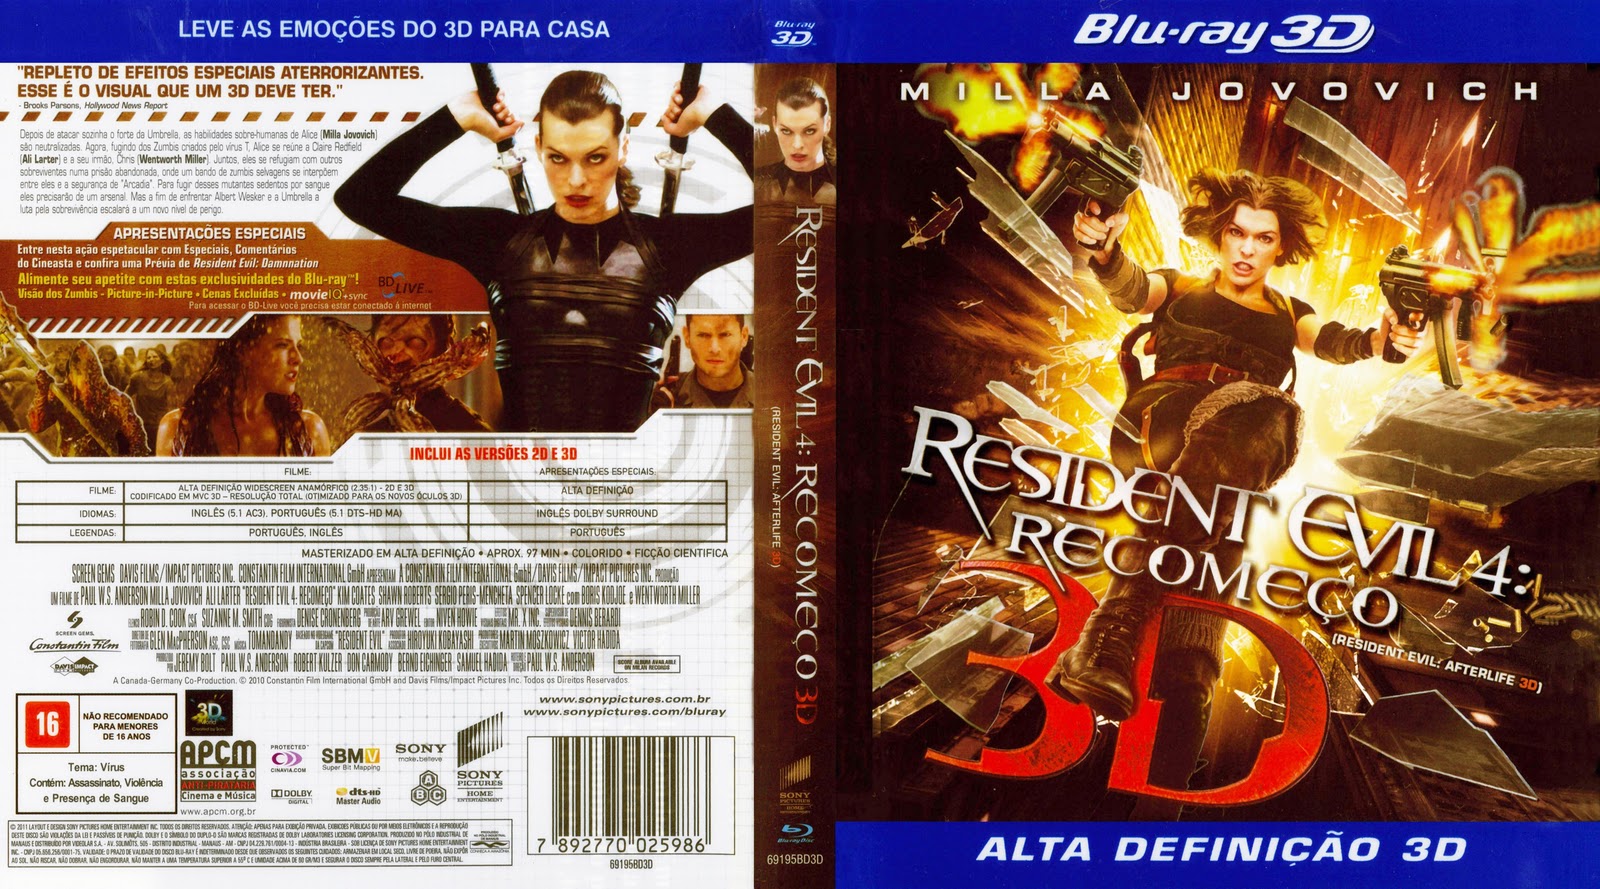 Resident Evil 4 - O Recome?O